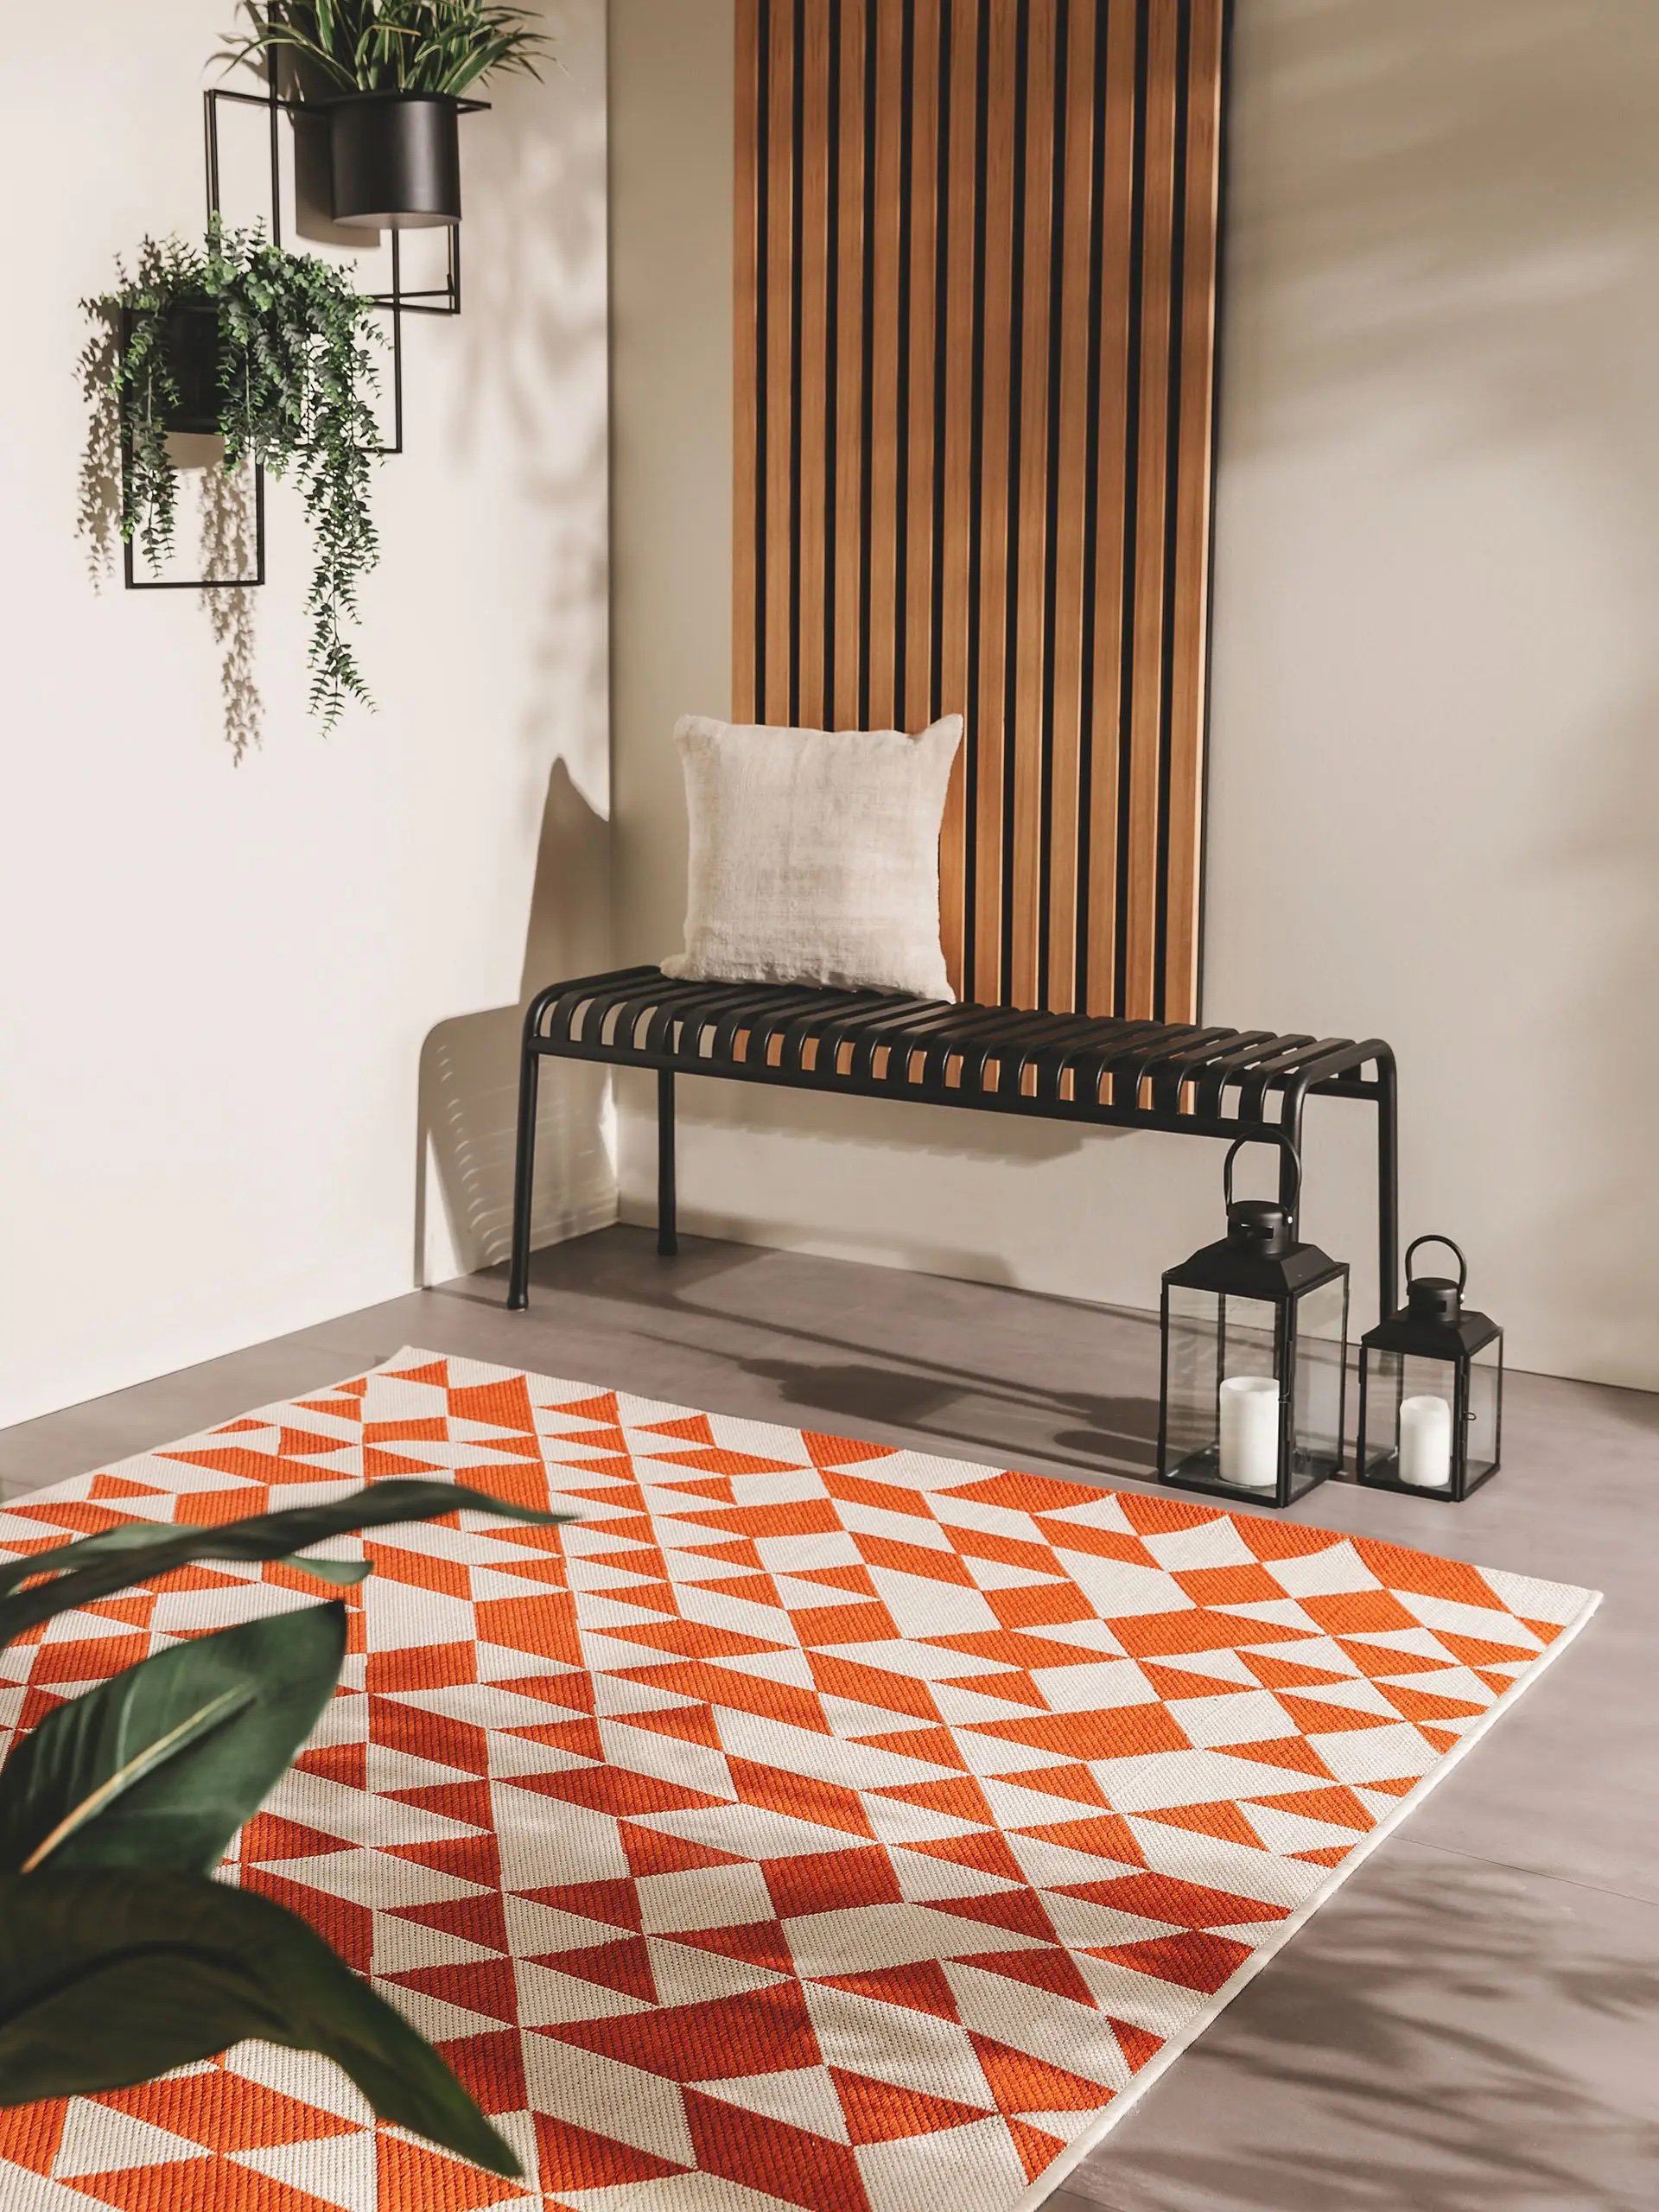 alfombra exterior naranja y roja mueble metálico